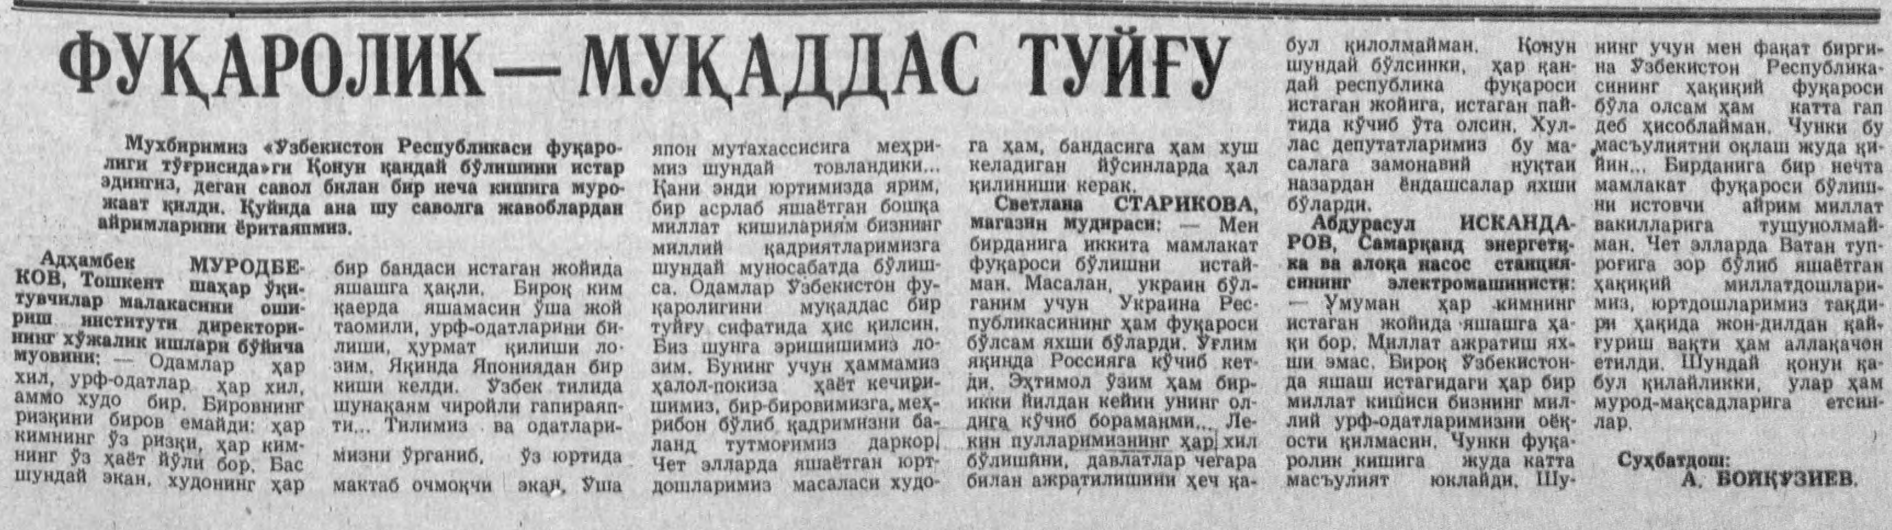 «Халқ сўзи» газетасининг 1992 йил 25 июнь сонидан лавҳа